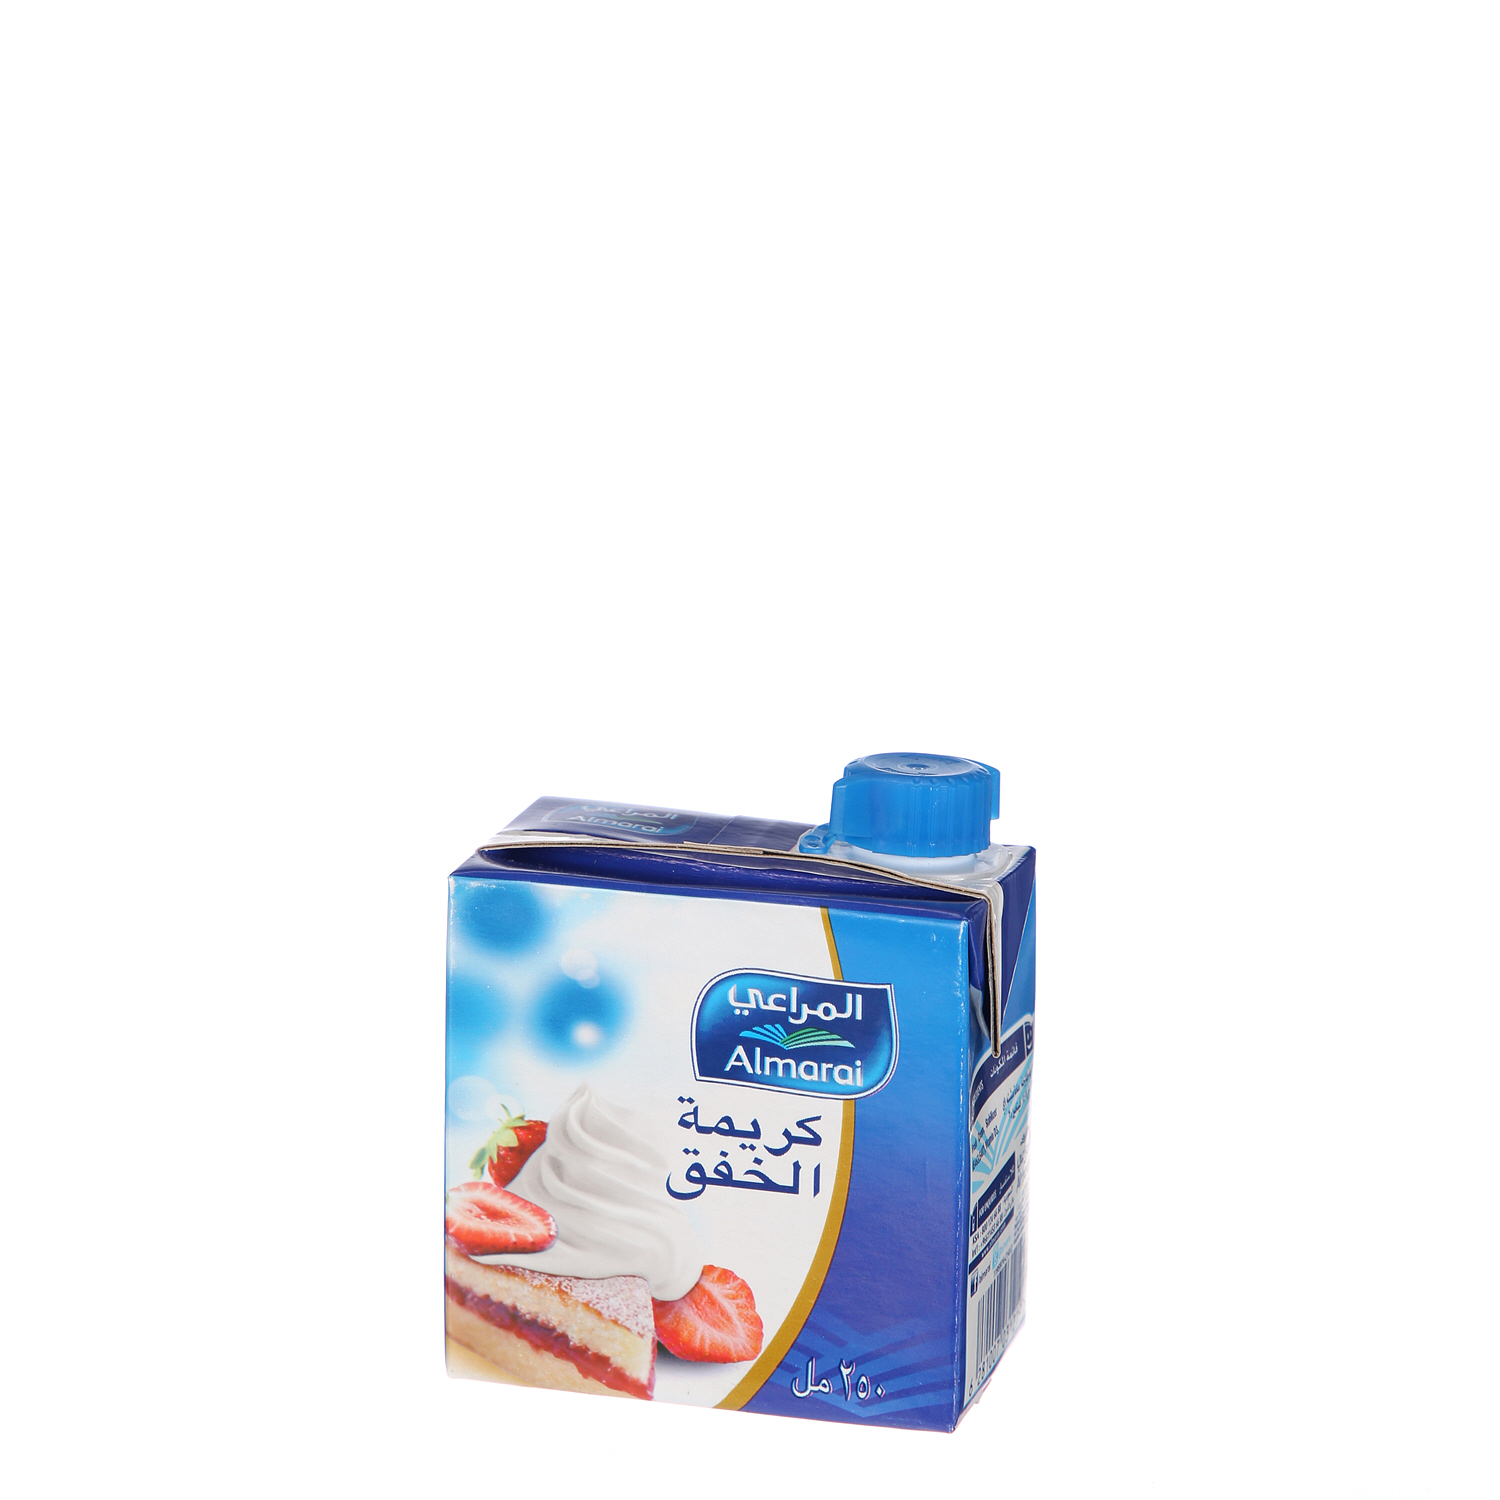 Al Marai Whipping Cream Sharjah Cooprewcap 250 ml